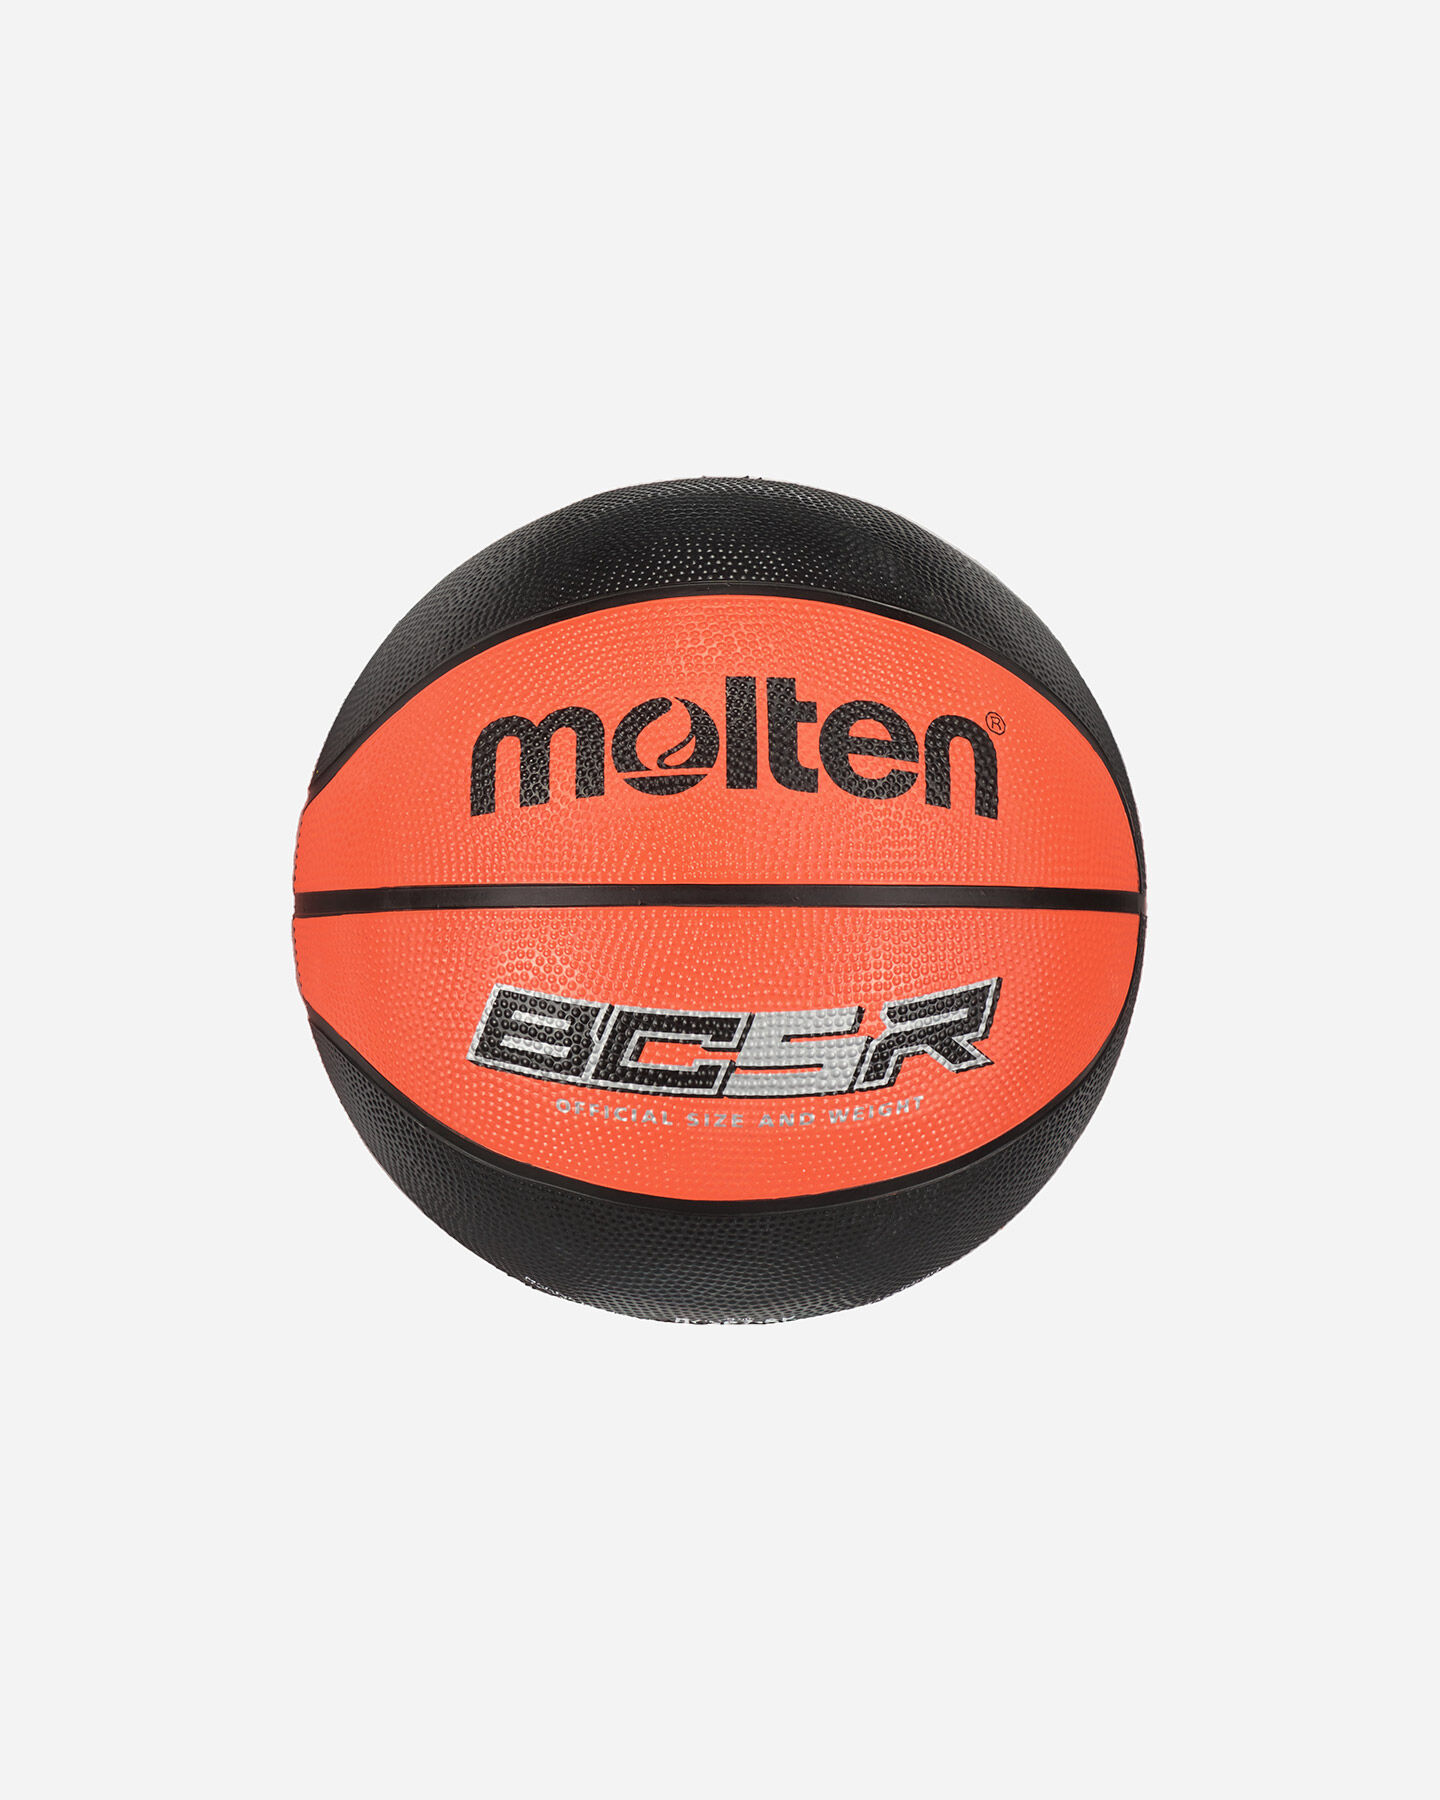  Pallone basket MOLTEN BC5R SZ.5  S4127204|UNI|5 scatto 0